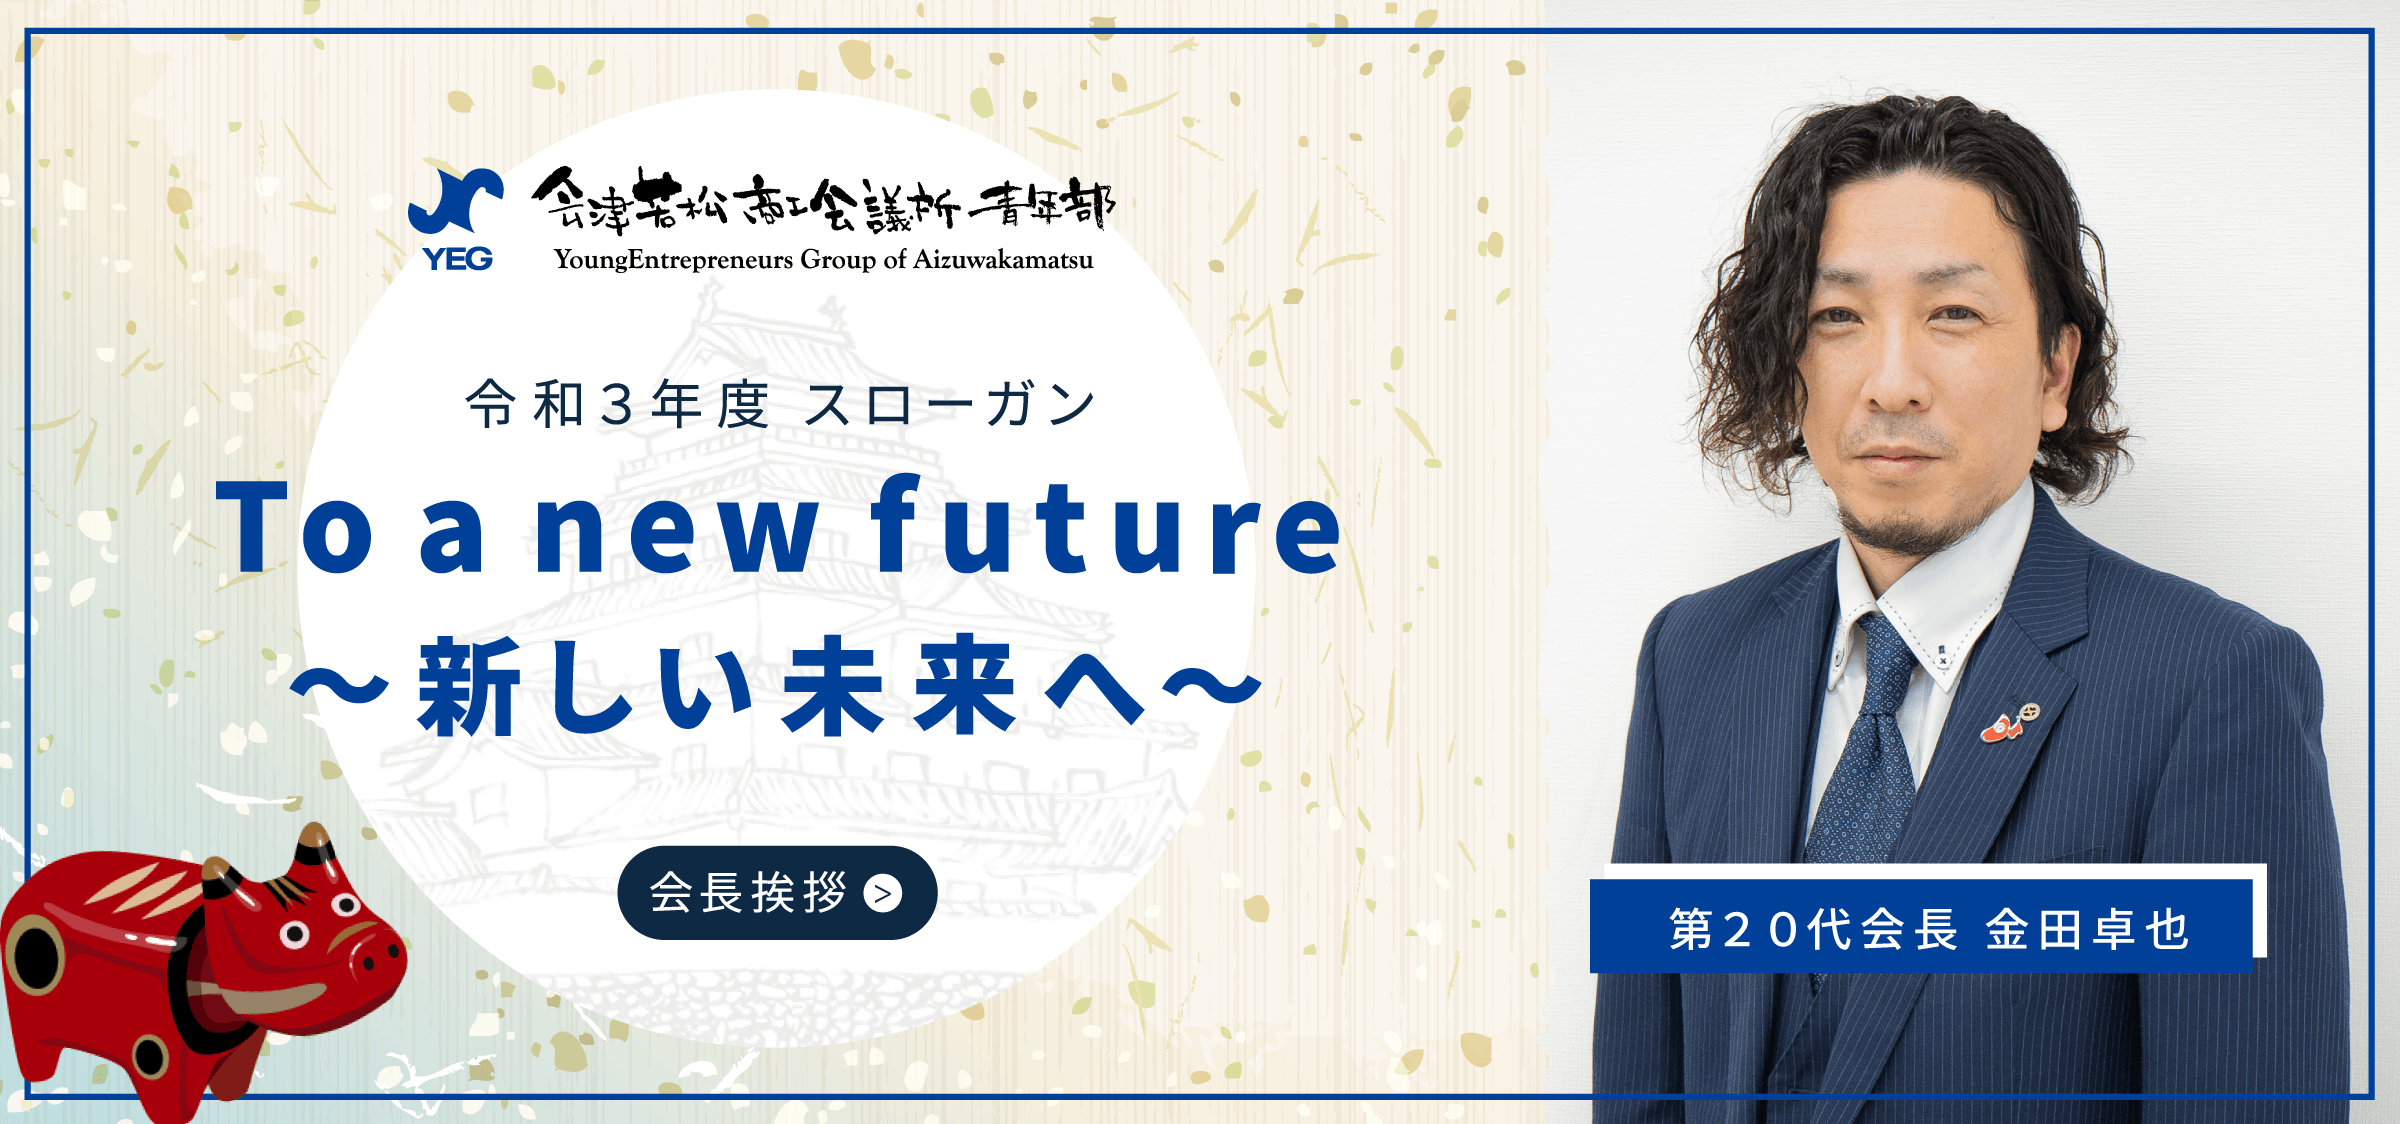 令和3年度スローガン To a new future 新しい未来へ 第20代会長 金田卓也